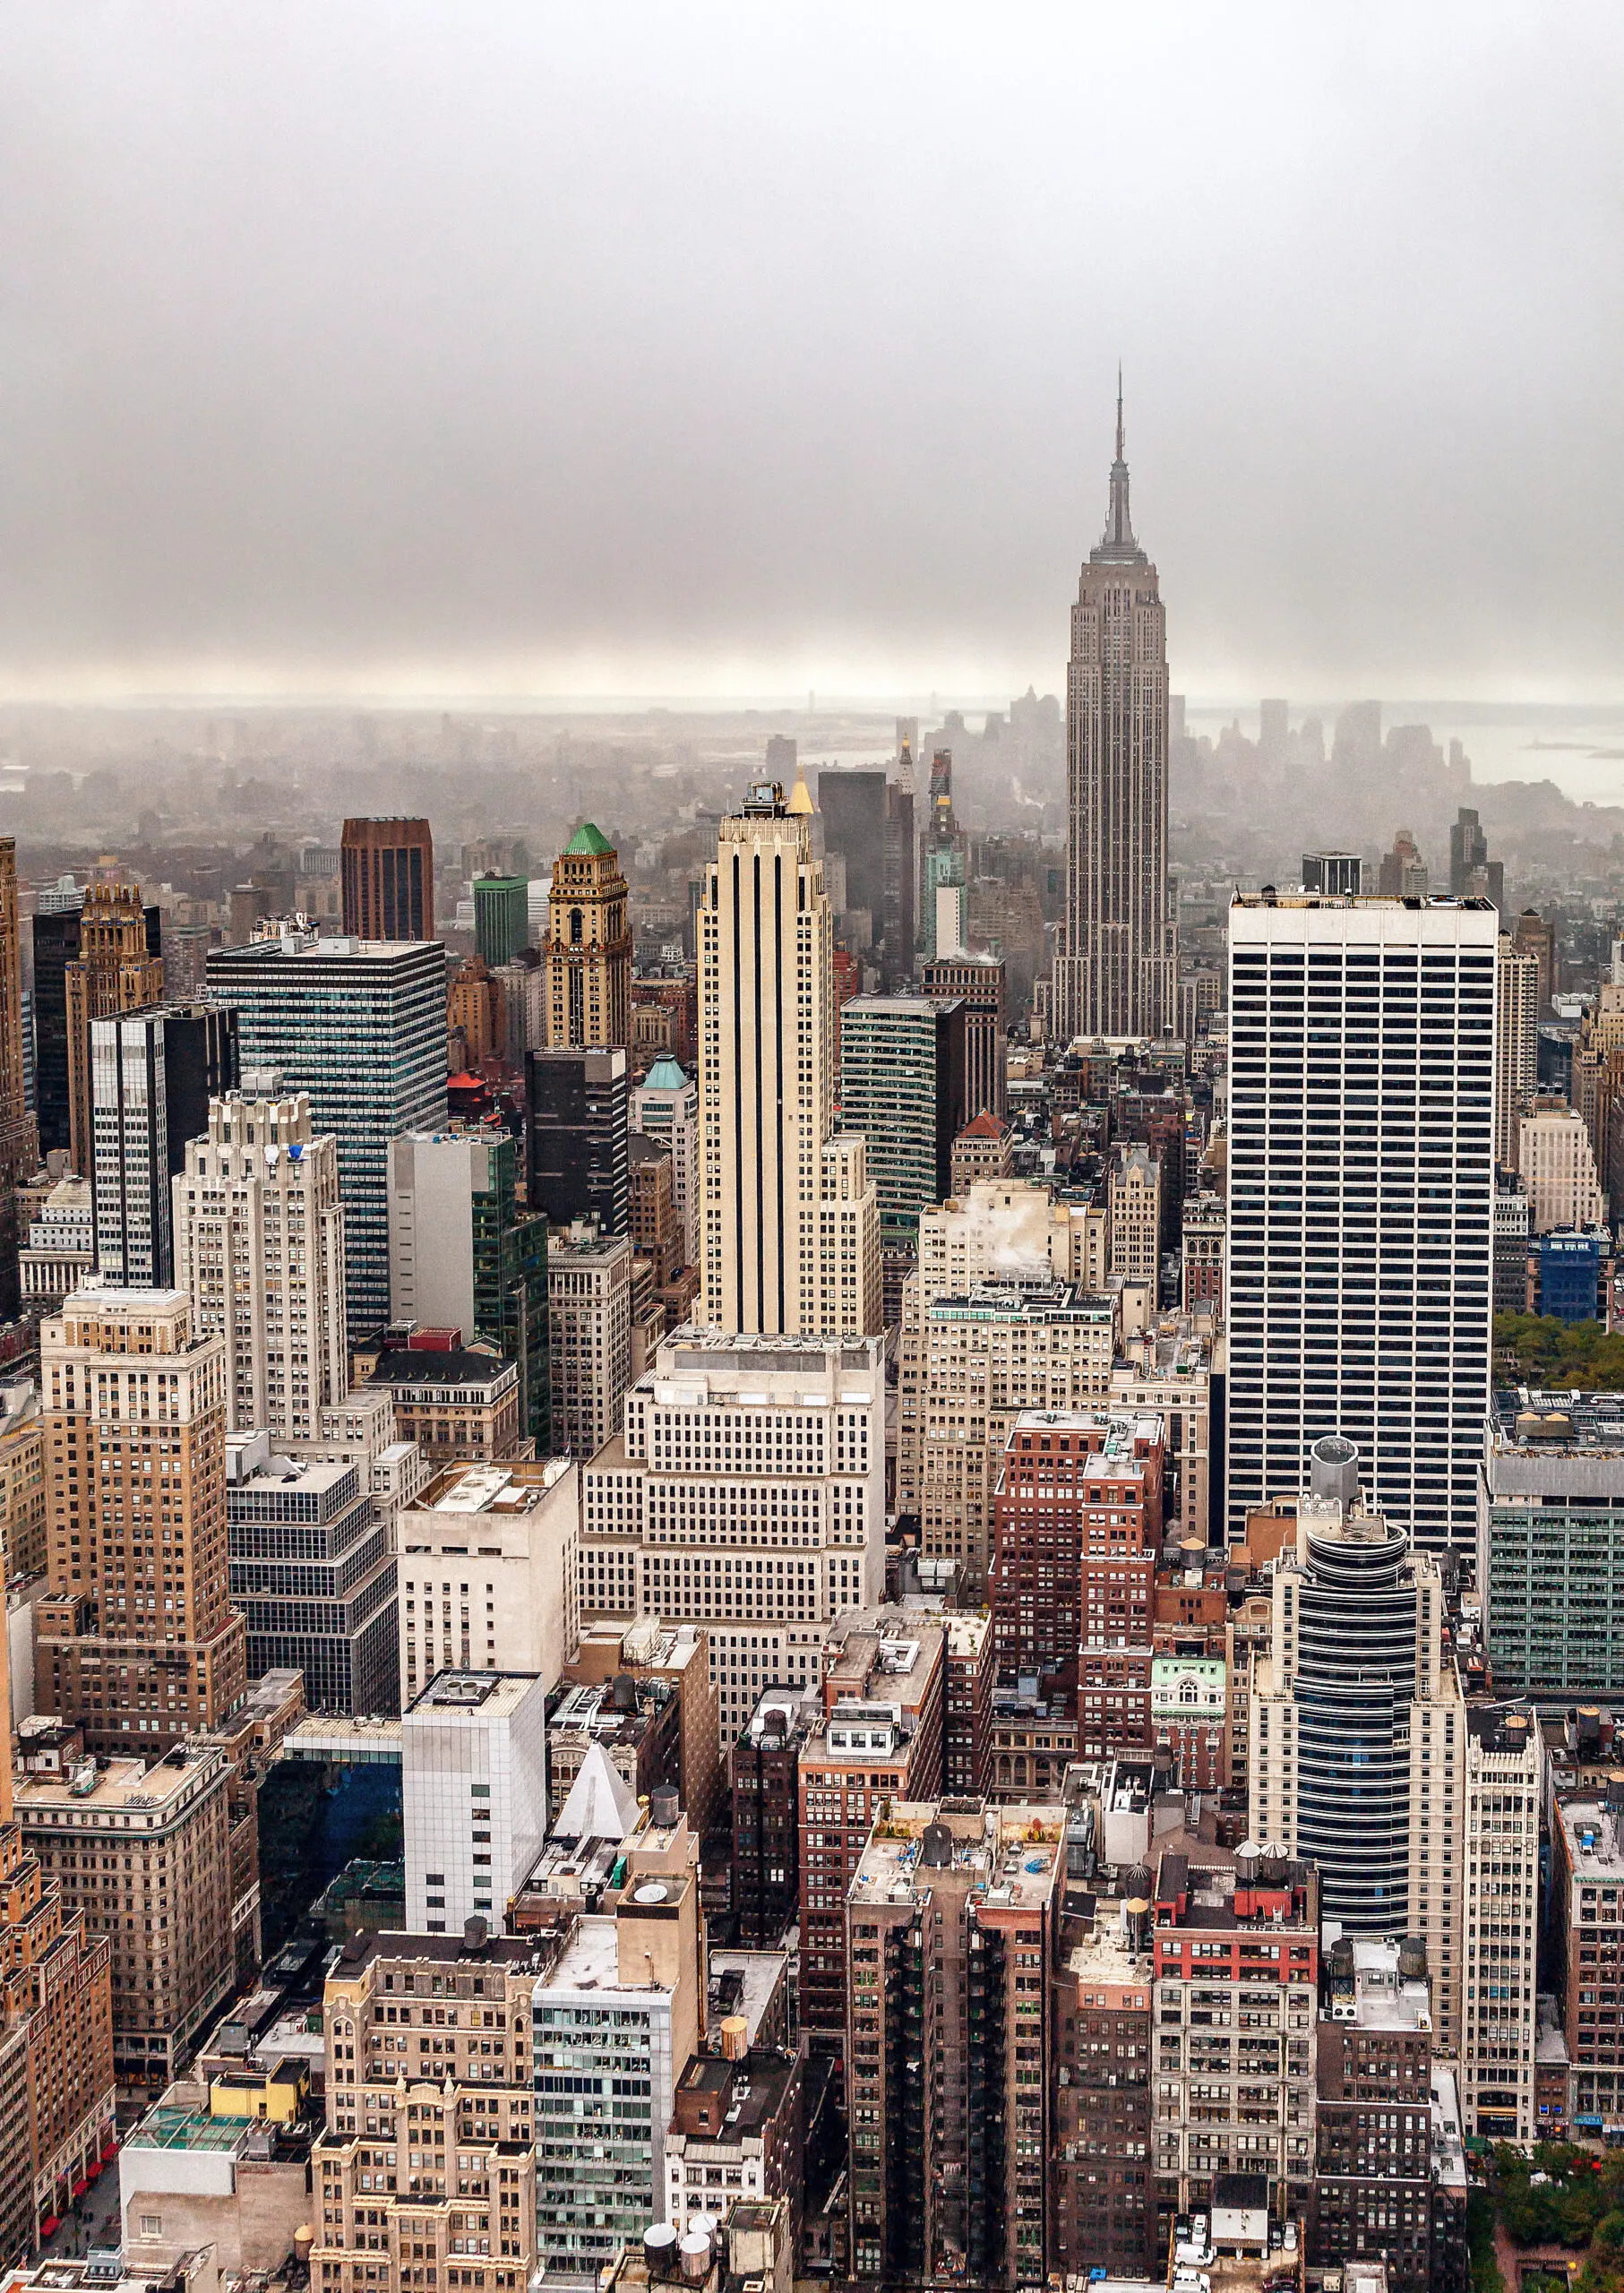 Wandbild (6362) Foggy day in Manhattan by Par Soderman,1x.com präsentiert: Technik,Architektur,Häuser,Skylines,Sehenswürdigkeiten